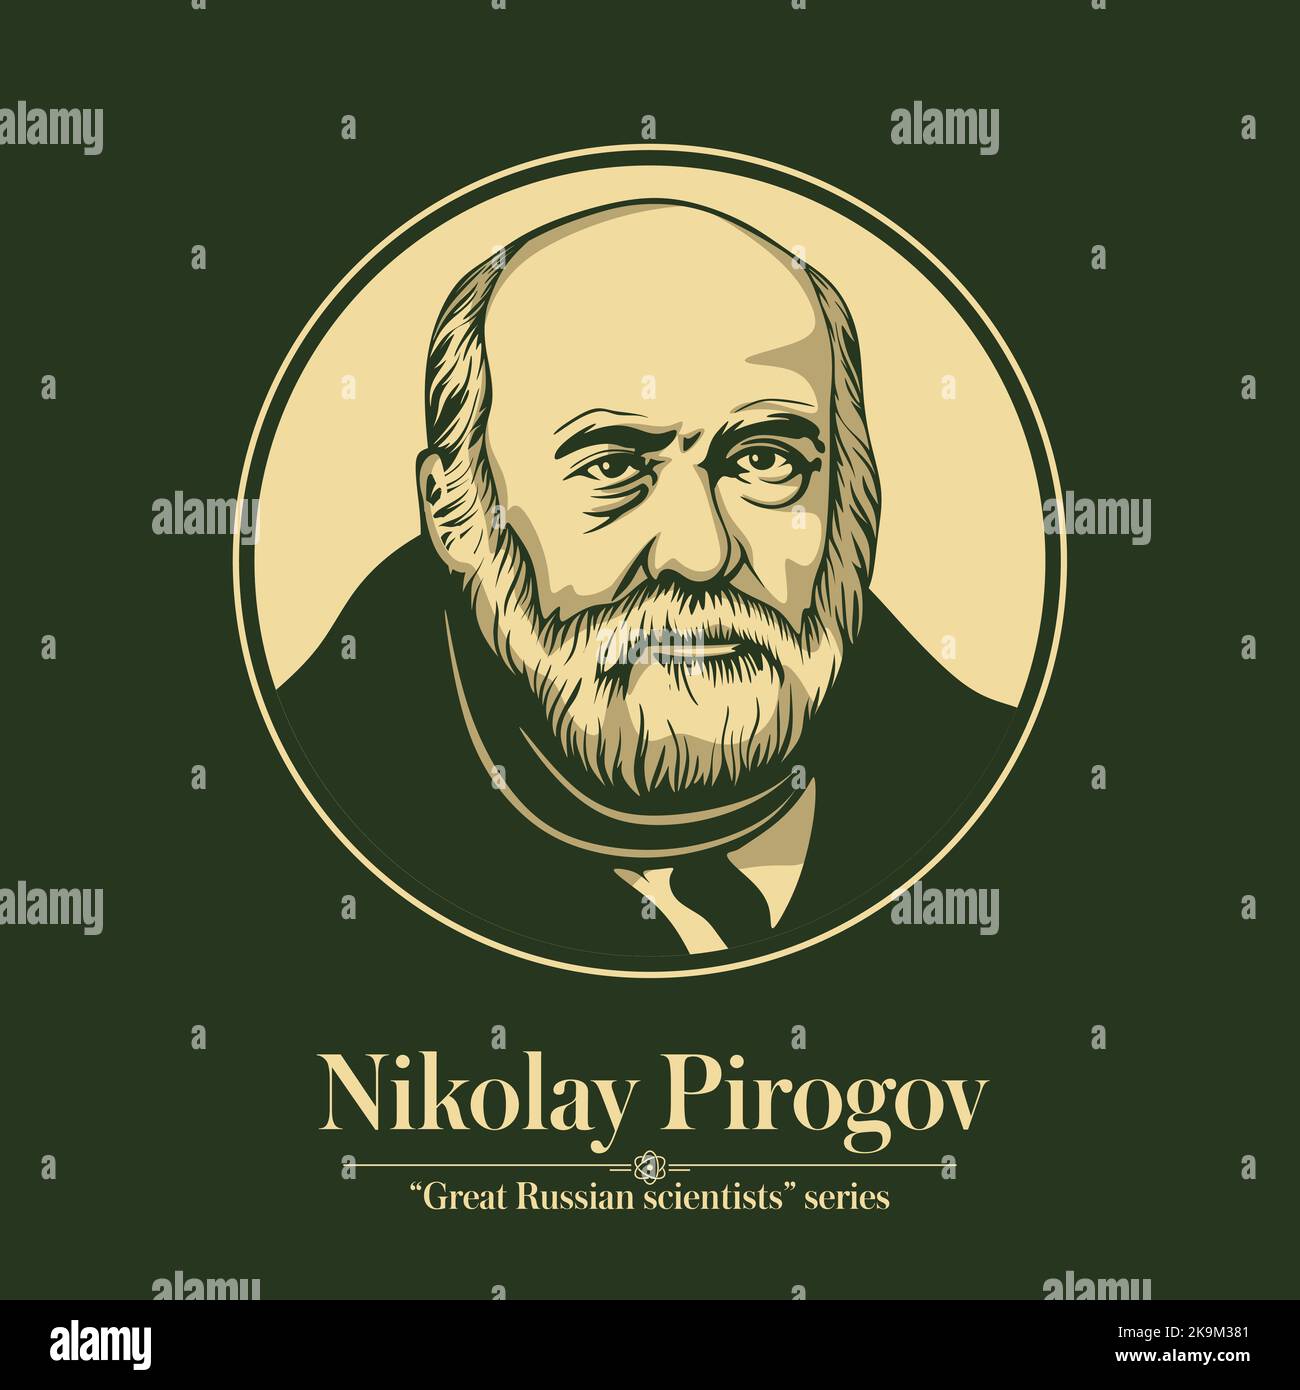 La série des grands scientifiques russes. Nikolay Pirogov était un scientifique russe, médecin, pédologue, figure publique Illustration de Vecteur